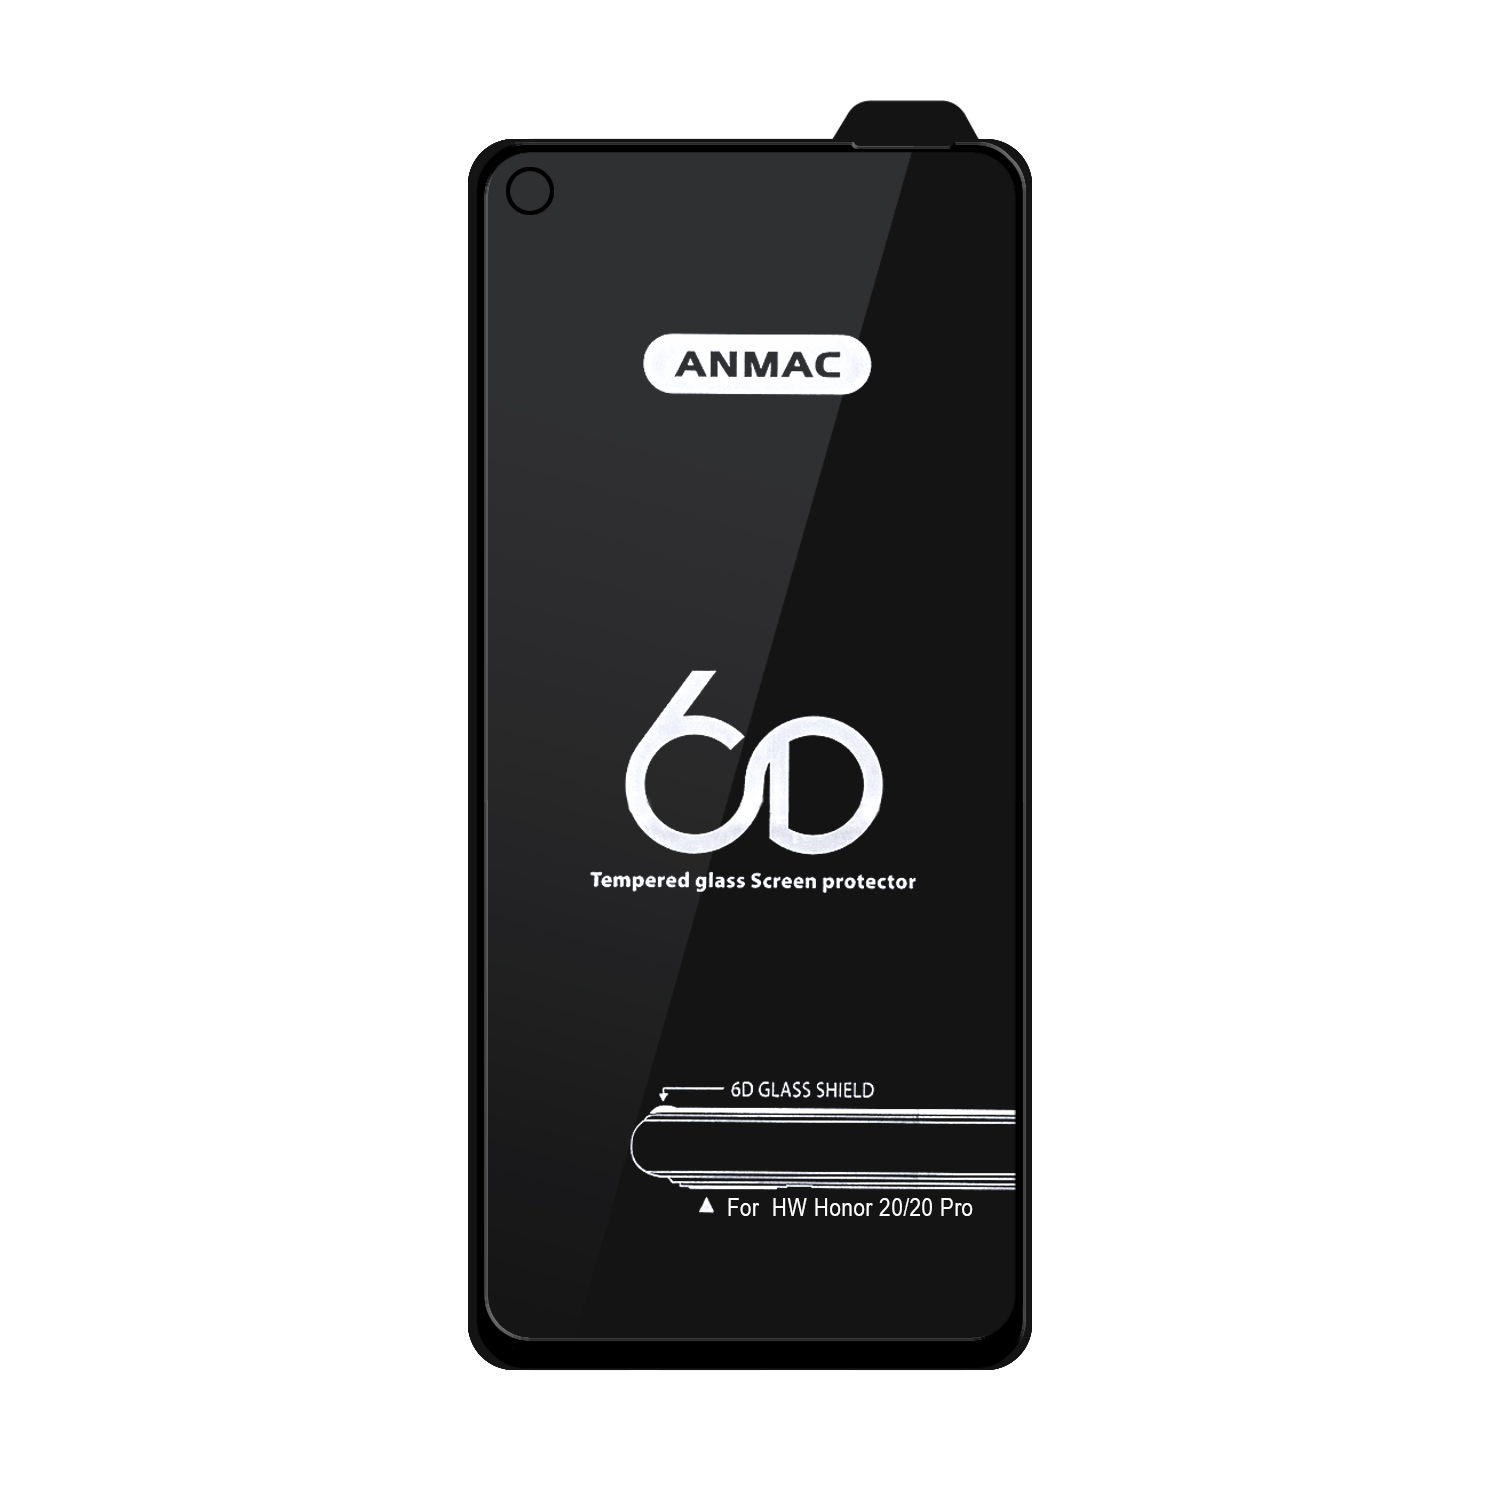 Защитное стекло Huawei Honor 20/20 Pro Anmac 6D Black без упаковки Арт.1137142